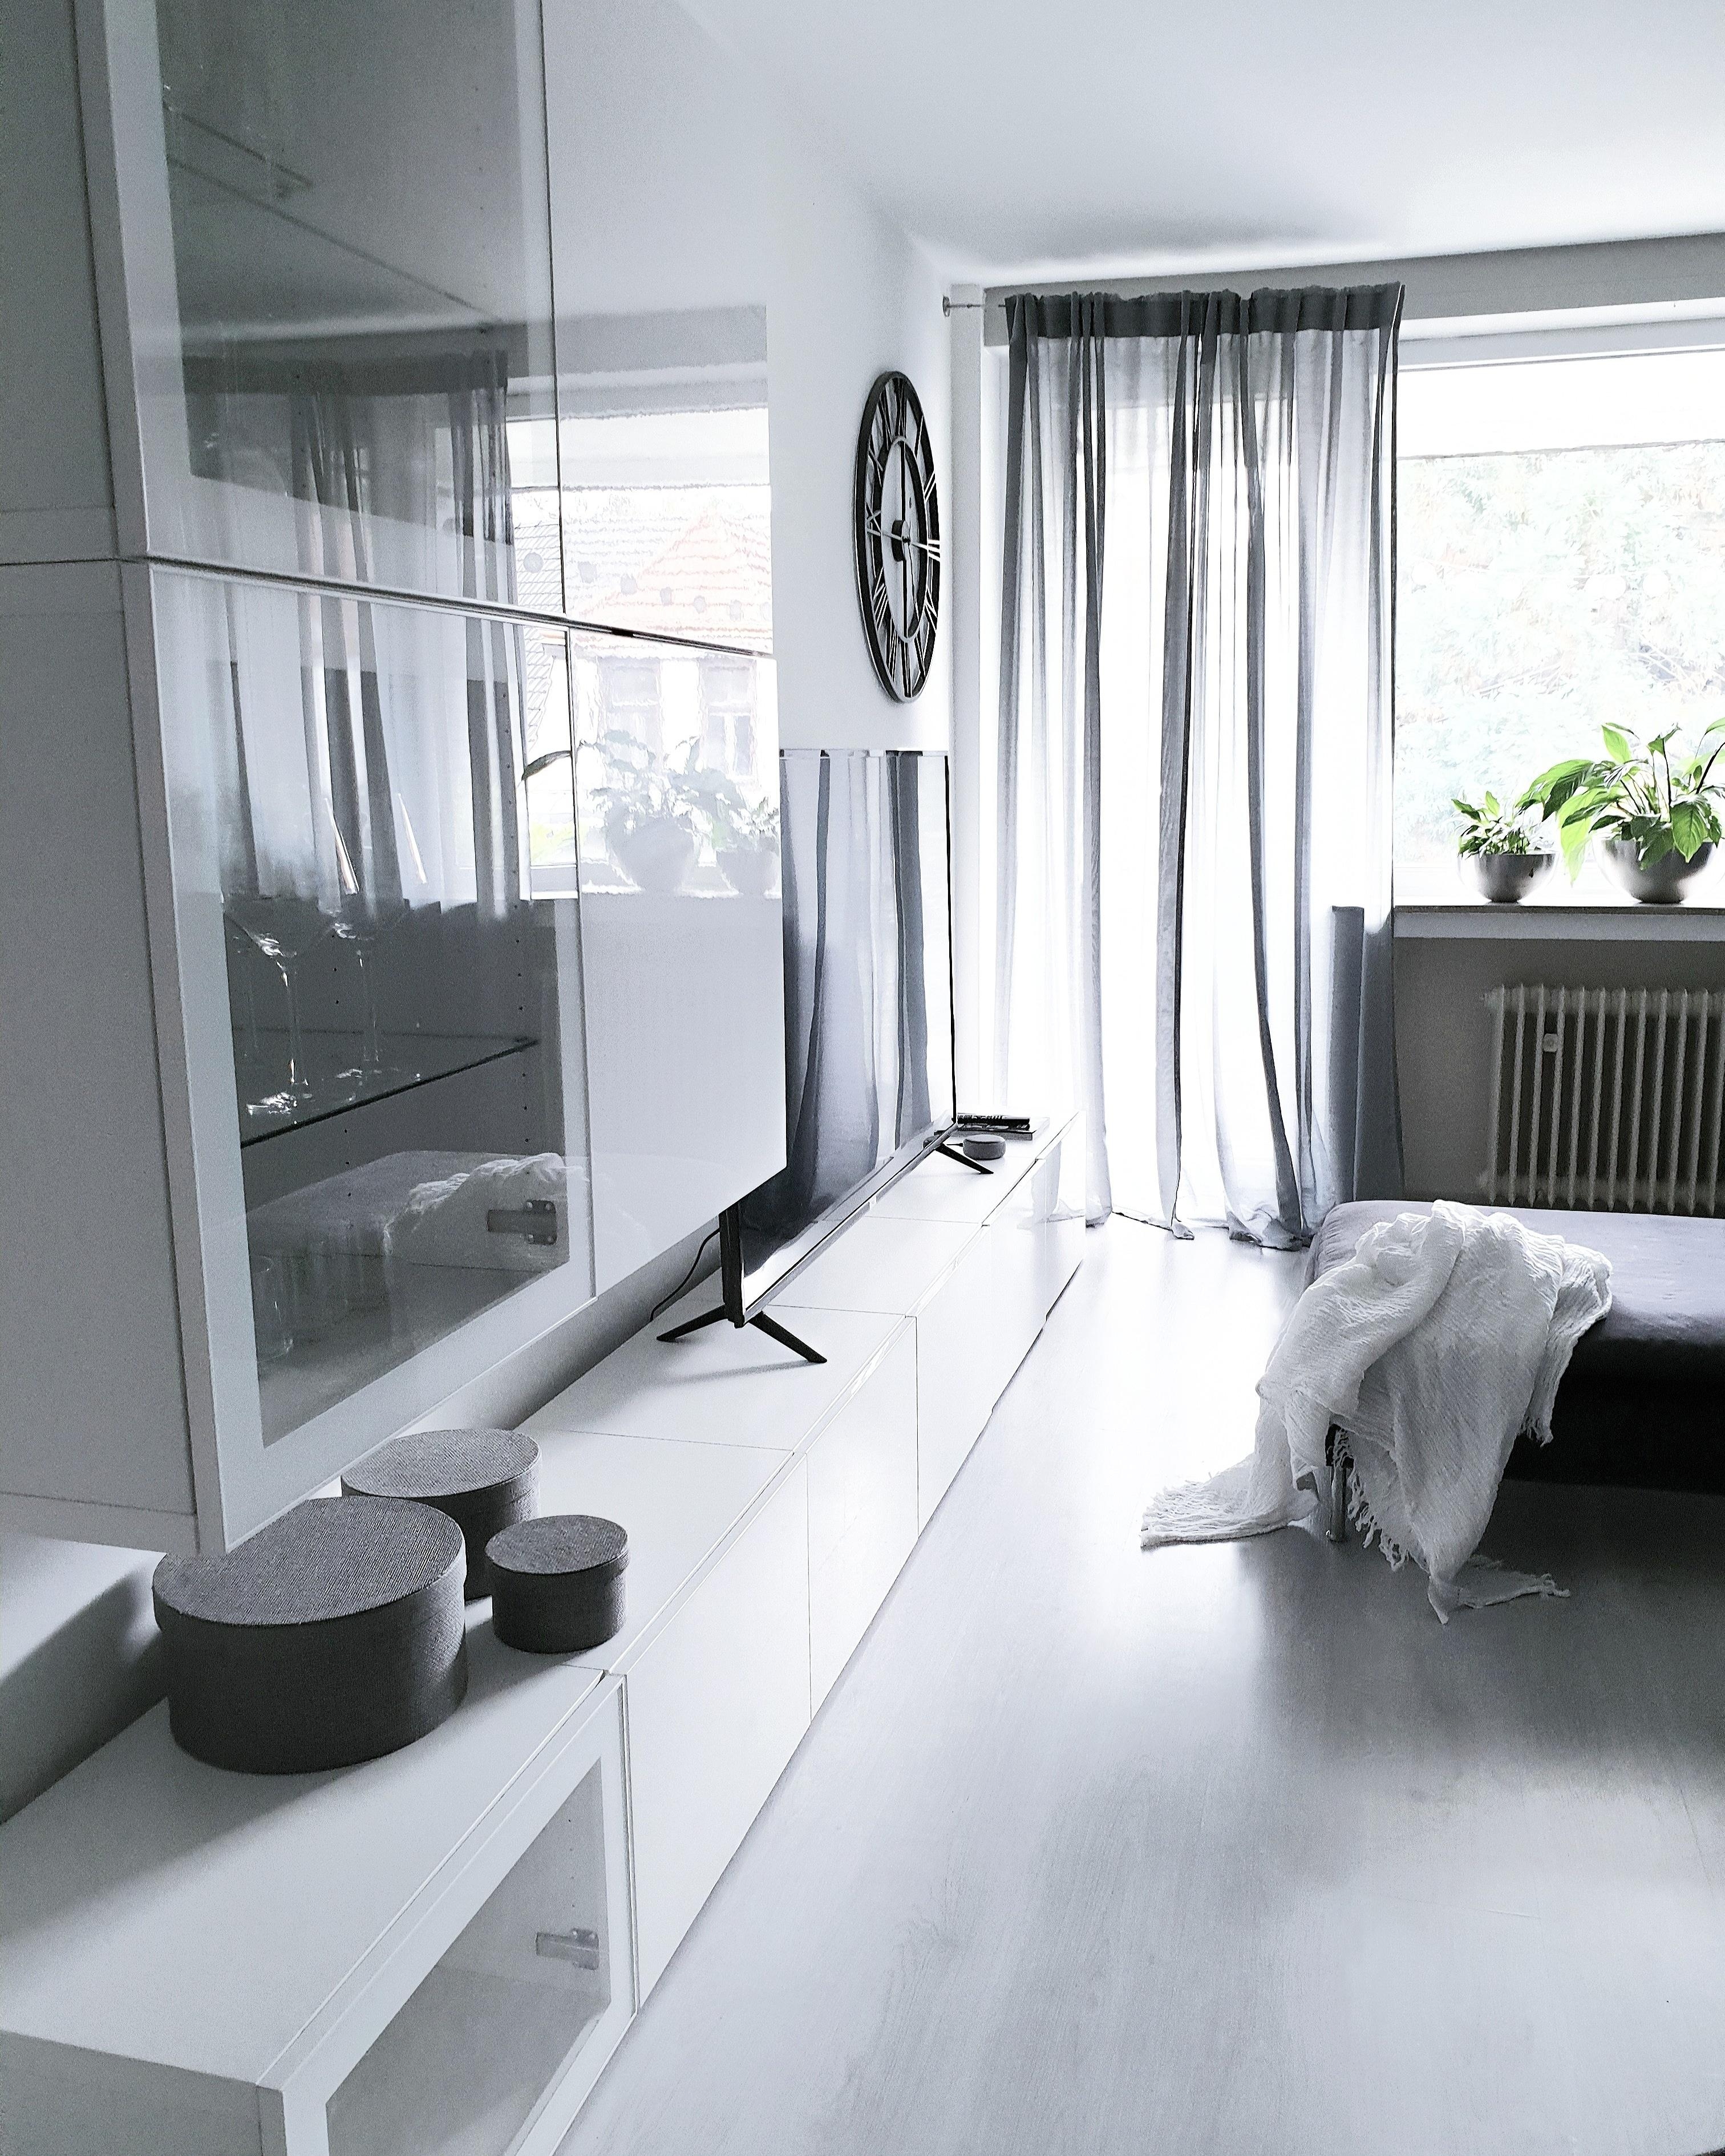 Unsere Bestakombination im Wohnzimmer 🙃
#wohnzimmer #wohnwand #besta #interior #söderhamn #minimalismus 